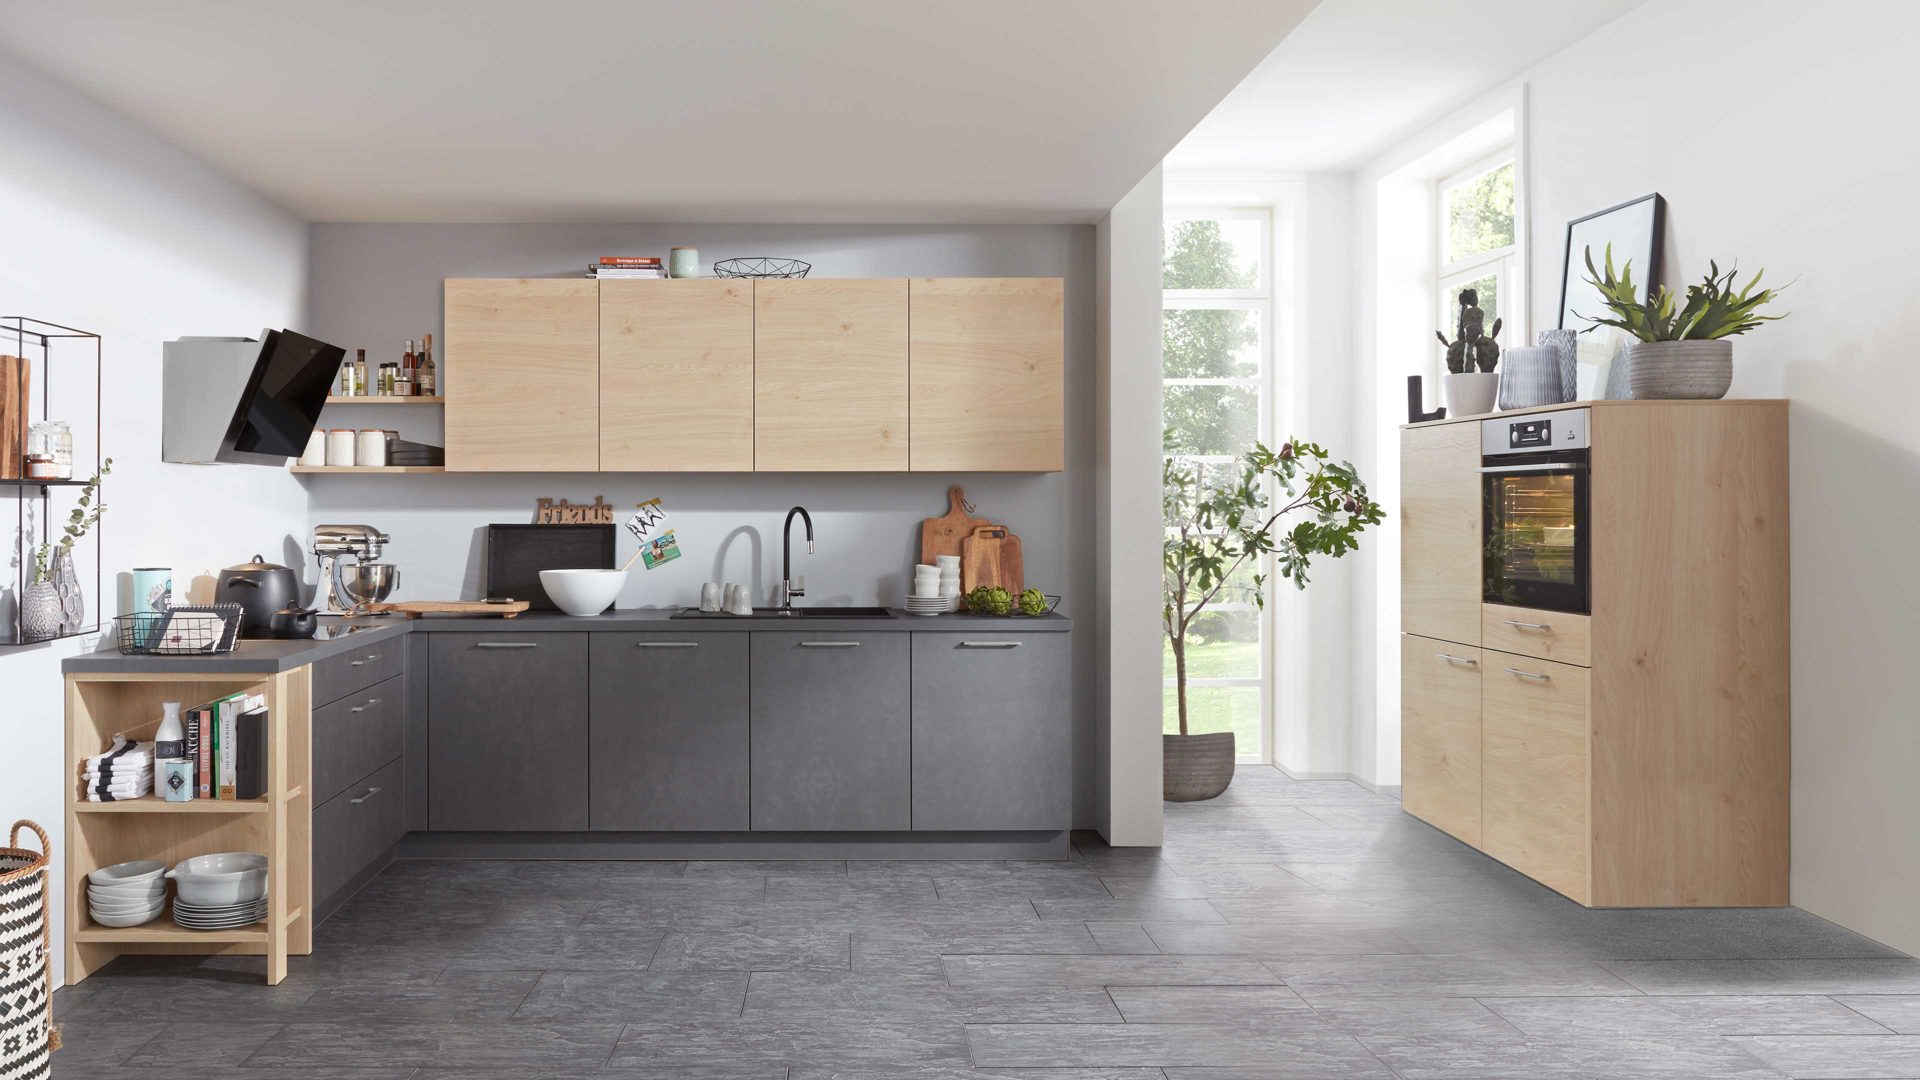 Einbauküche Interliving aus Holz in Holzfarben Interliving Küche Serie 3008 mit AEG Einbaugeräten Stahlgrau & Asteiche – zweizeilig